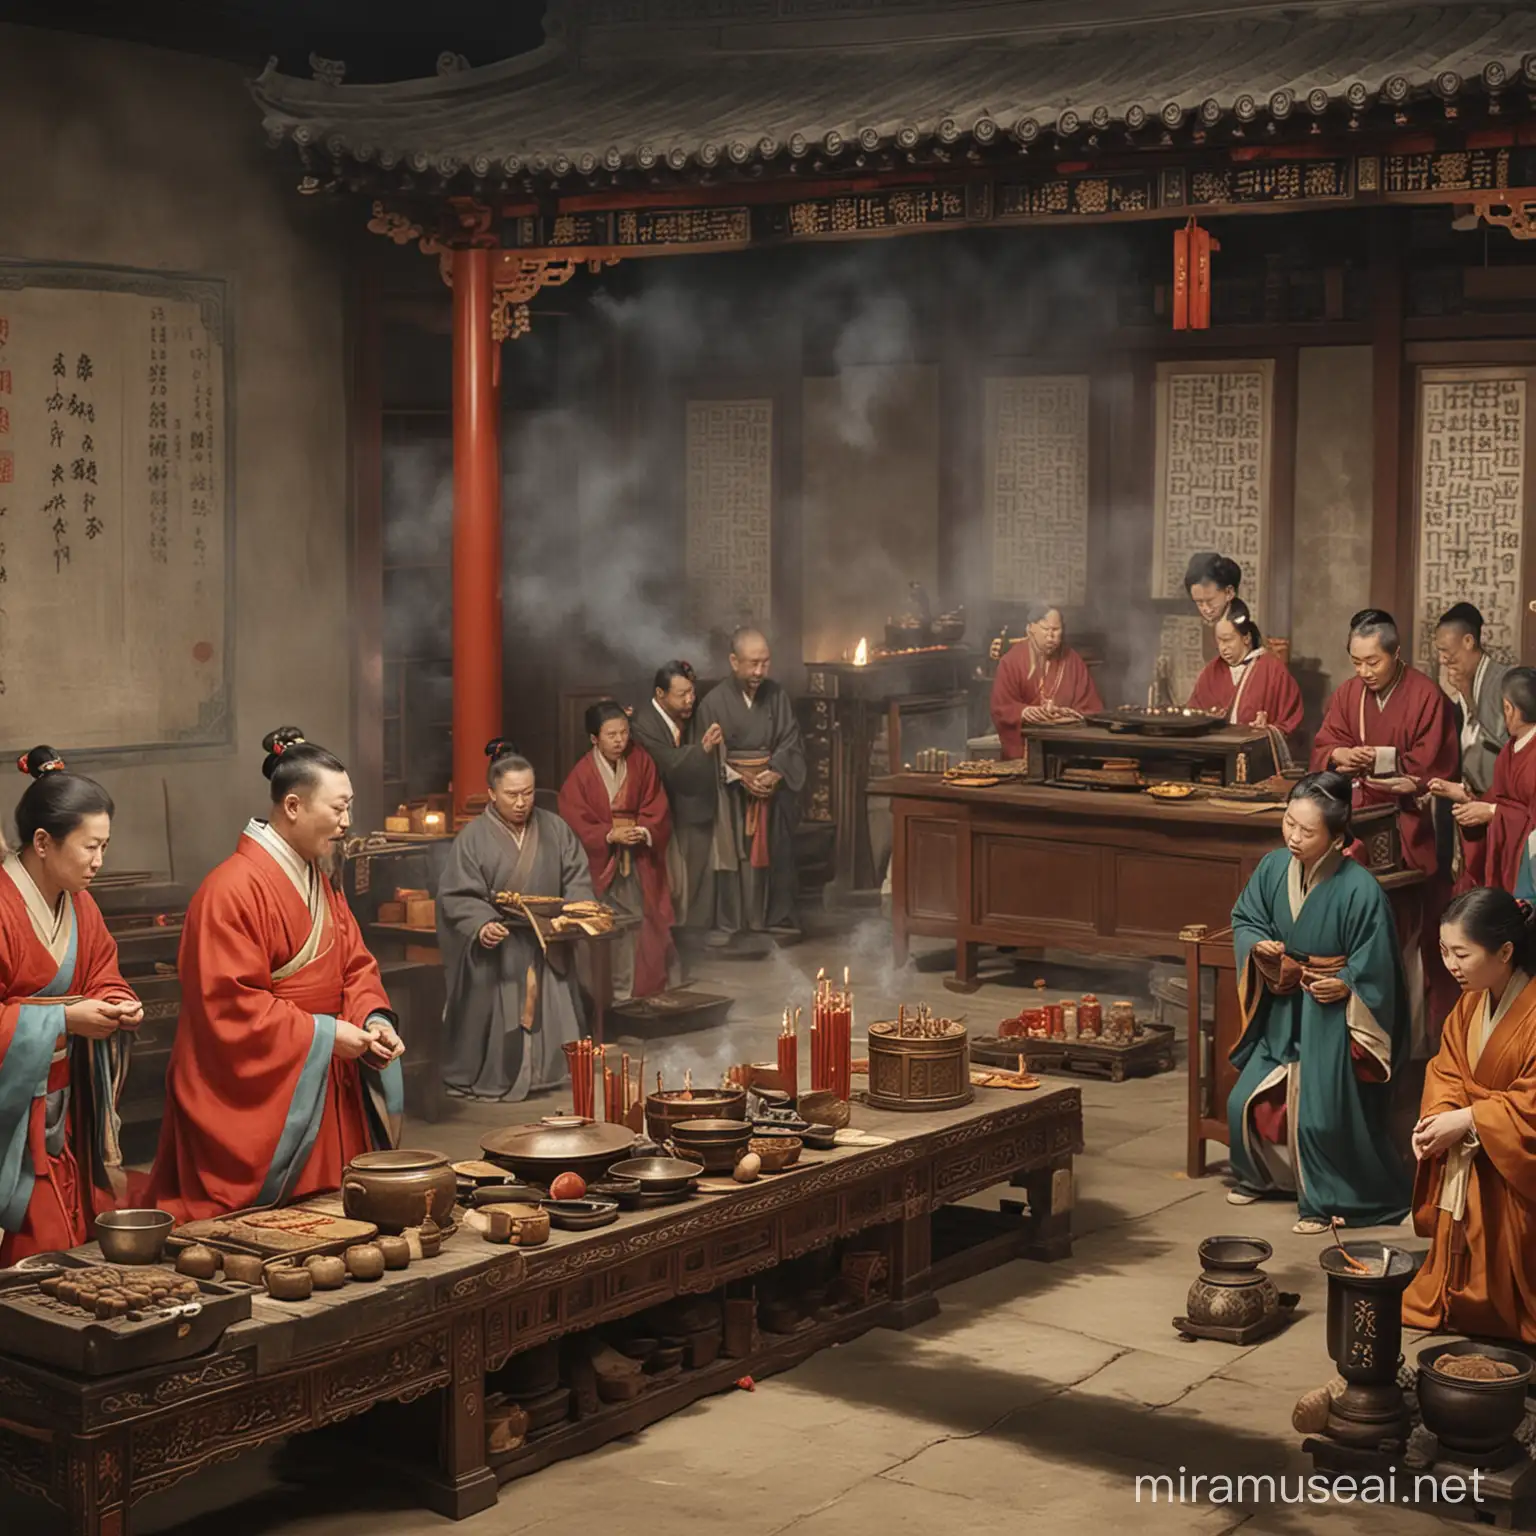 Una escena que muestra a una familia confuciana realizando rituales de veneración a sus ancestros, con incienso y ofrendas en un altar, enfatizando la reverencia por los antepasados en la tradición confuciana.